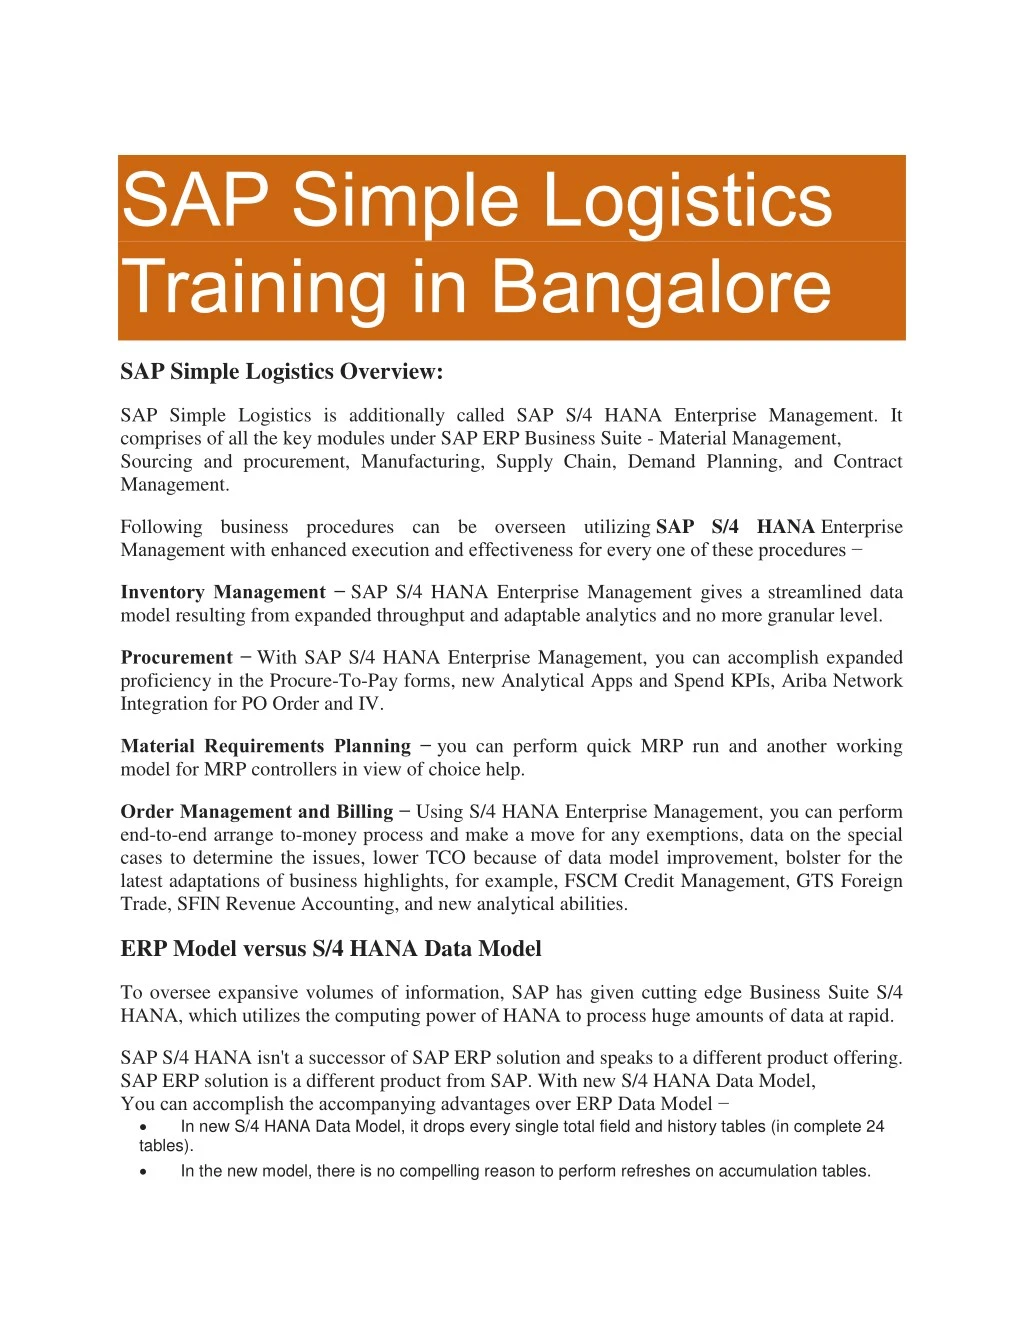 sap simple logistics training in bangalore